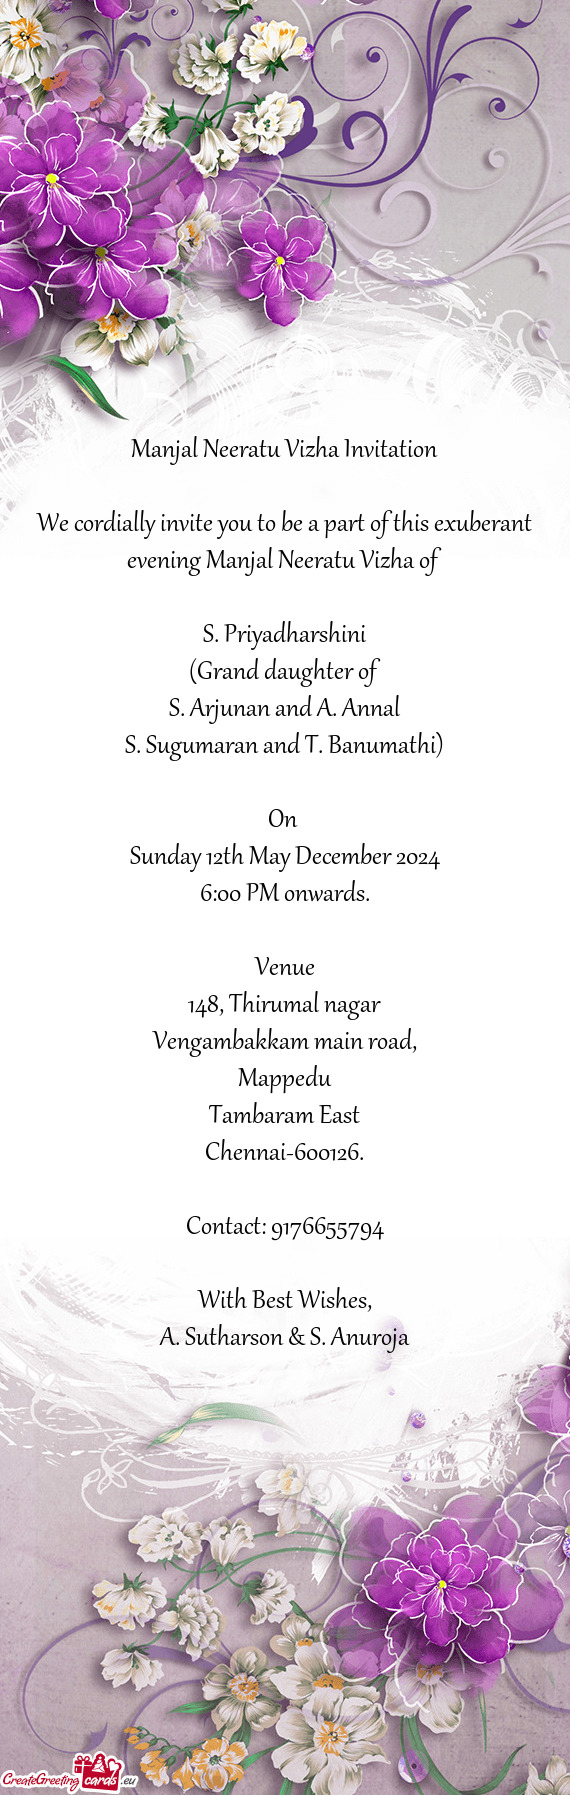 S. Arjunan and A. Annal